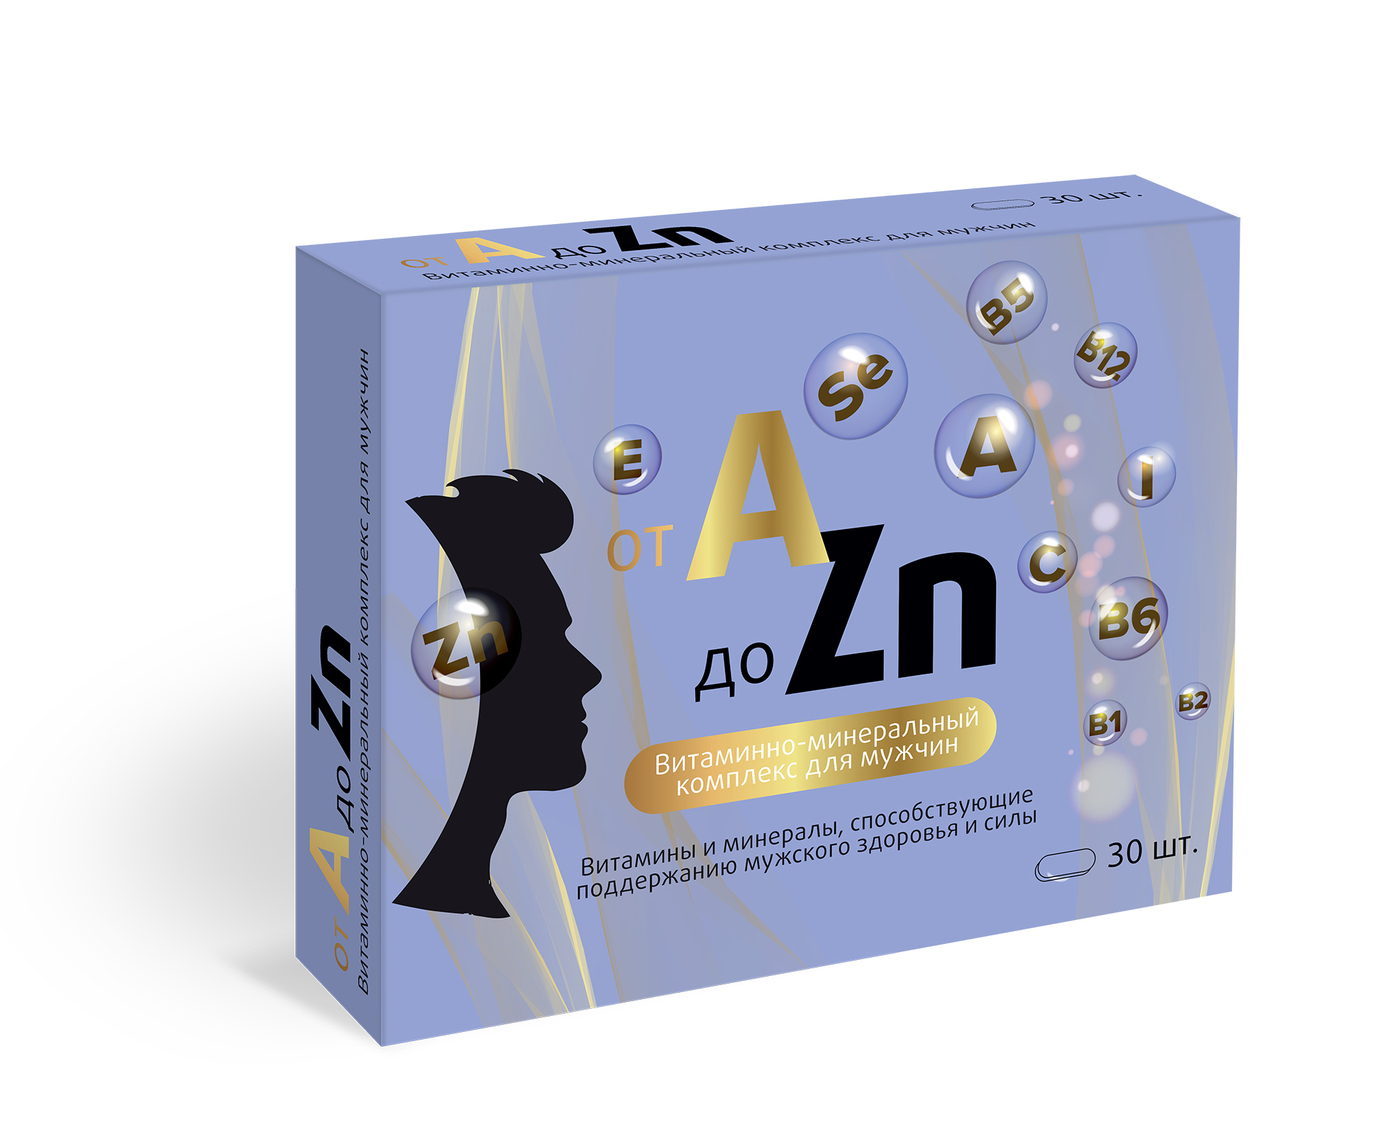 Витамин отзывы покупателей и врачей. Витаминный комплекс a-ZN квадрат-с табл. Для женщин №30. Витаминный комплекс для мужчин a -ZN 30таб. Витаминный комплекс a-ZN для мужчин витамир. Витаминный комплекс a-ZN для мужчин n30 квадрат.